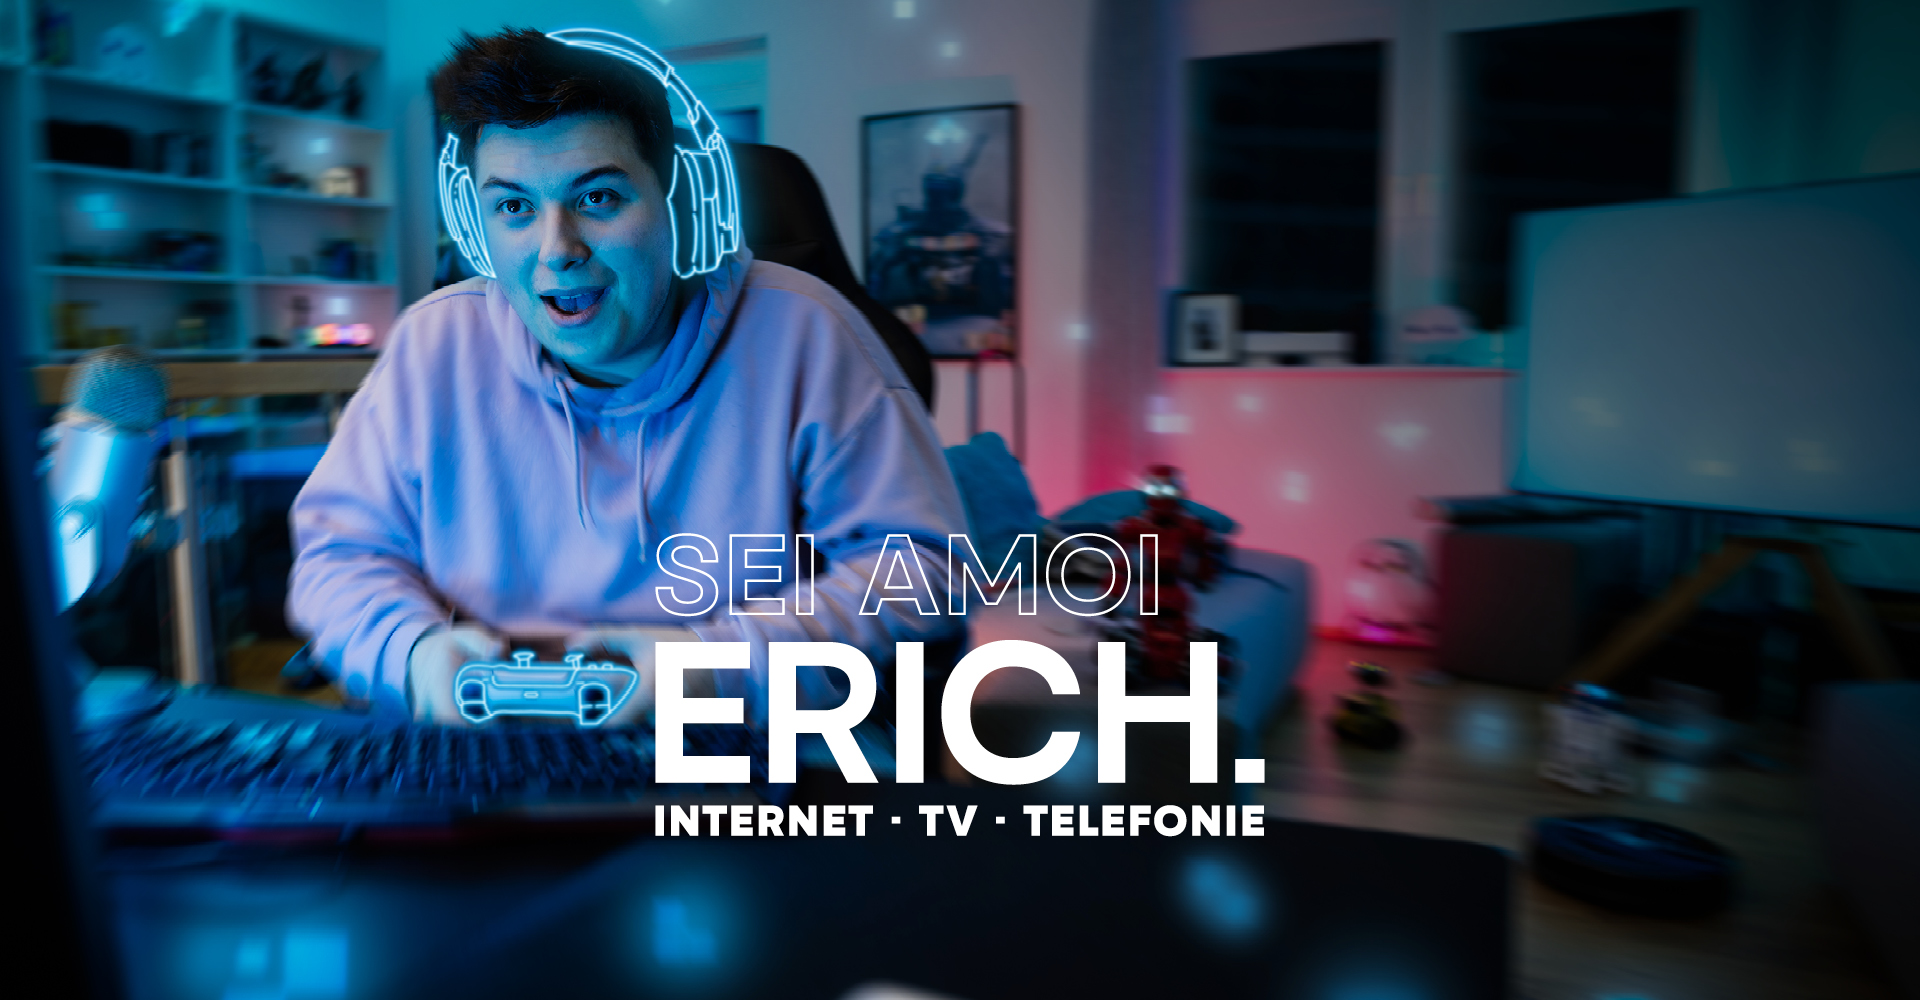 ERICH Internet-TV-Telefonie